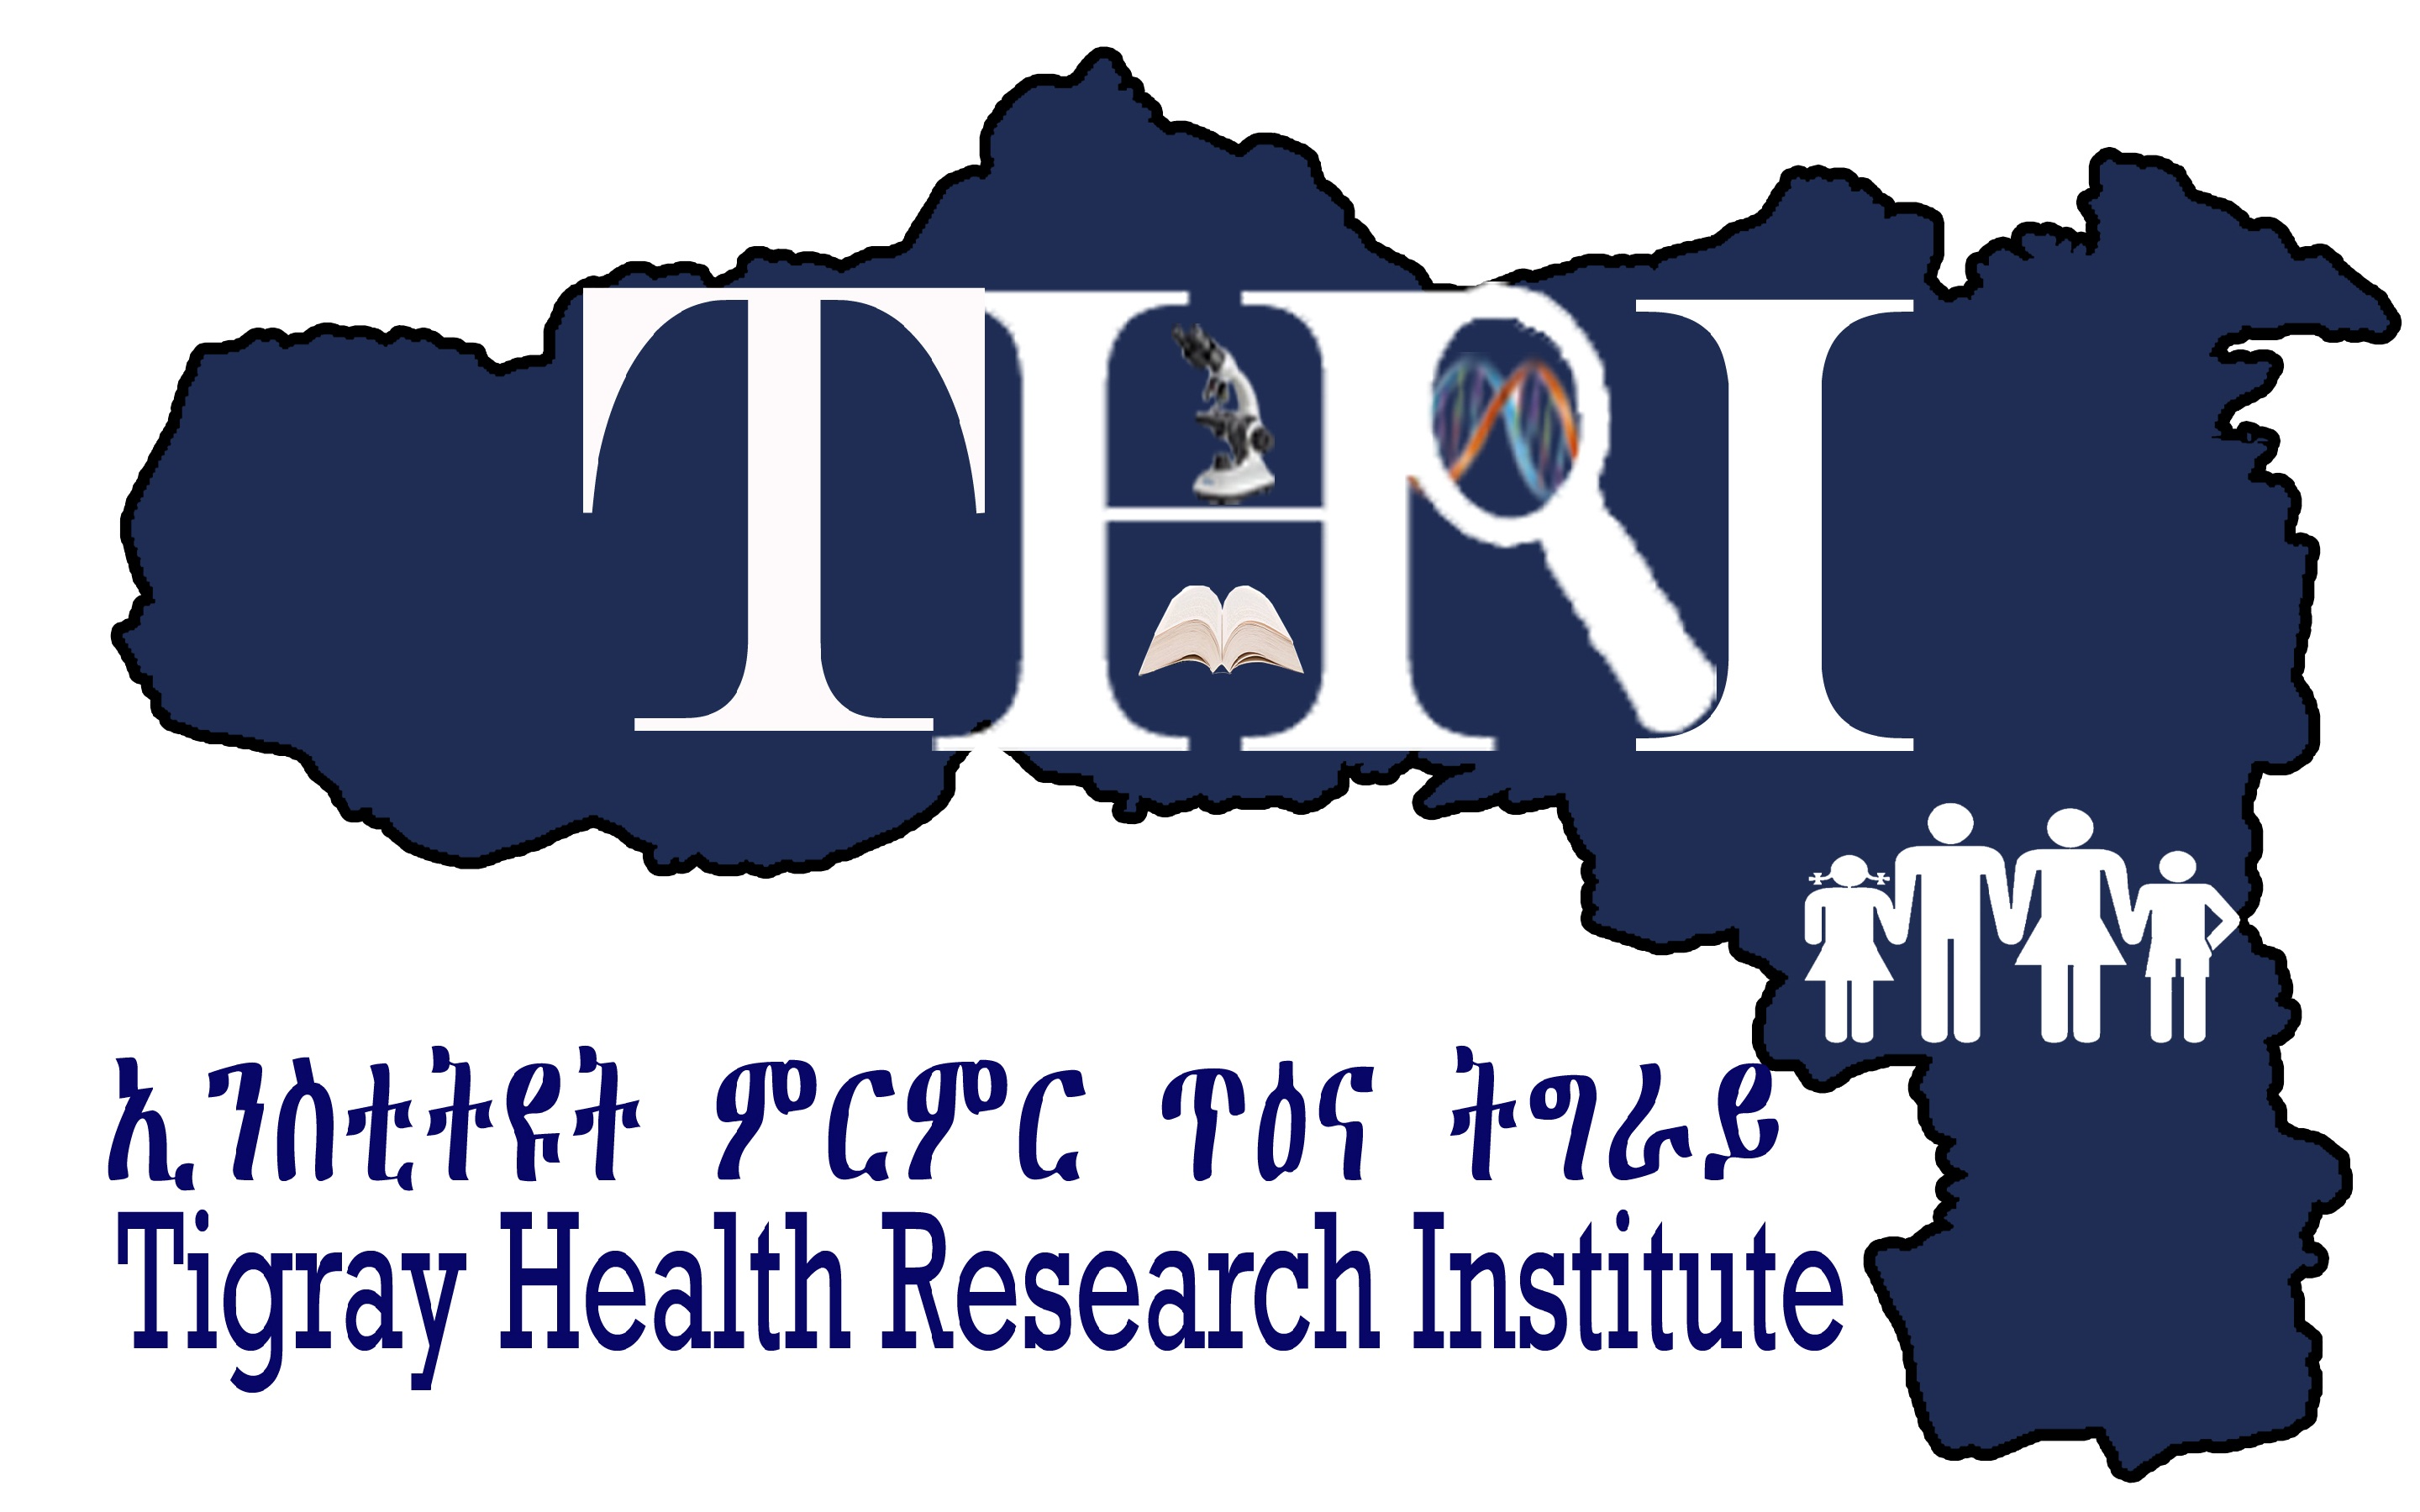 Tigray Health Research Institute THRI